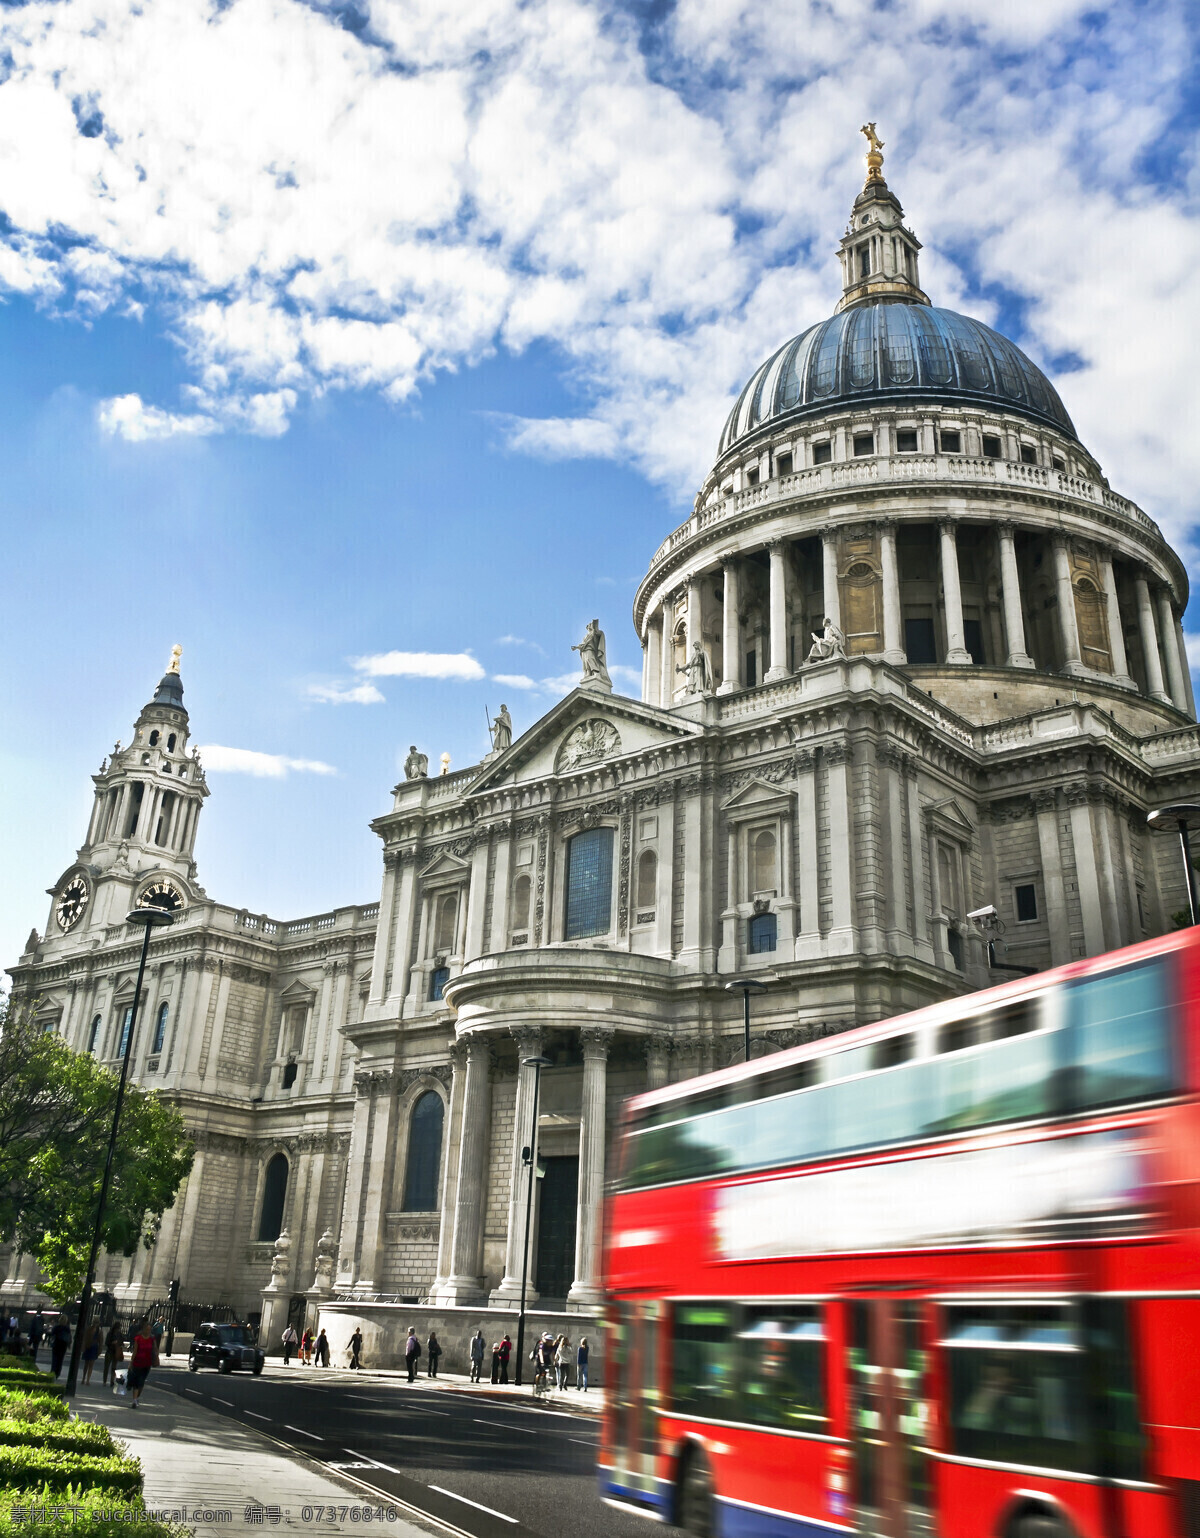 国 伦敦 圣保罗 大 教堂 英国 圣保罗大教堂 建筑物 蓝天 白云 天空 公交车 巴士 大巴 红色 街道 大街 路灯 大树 树木 自然景观 建筑景观